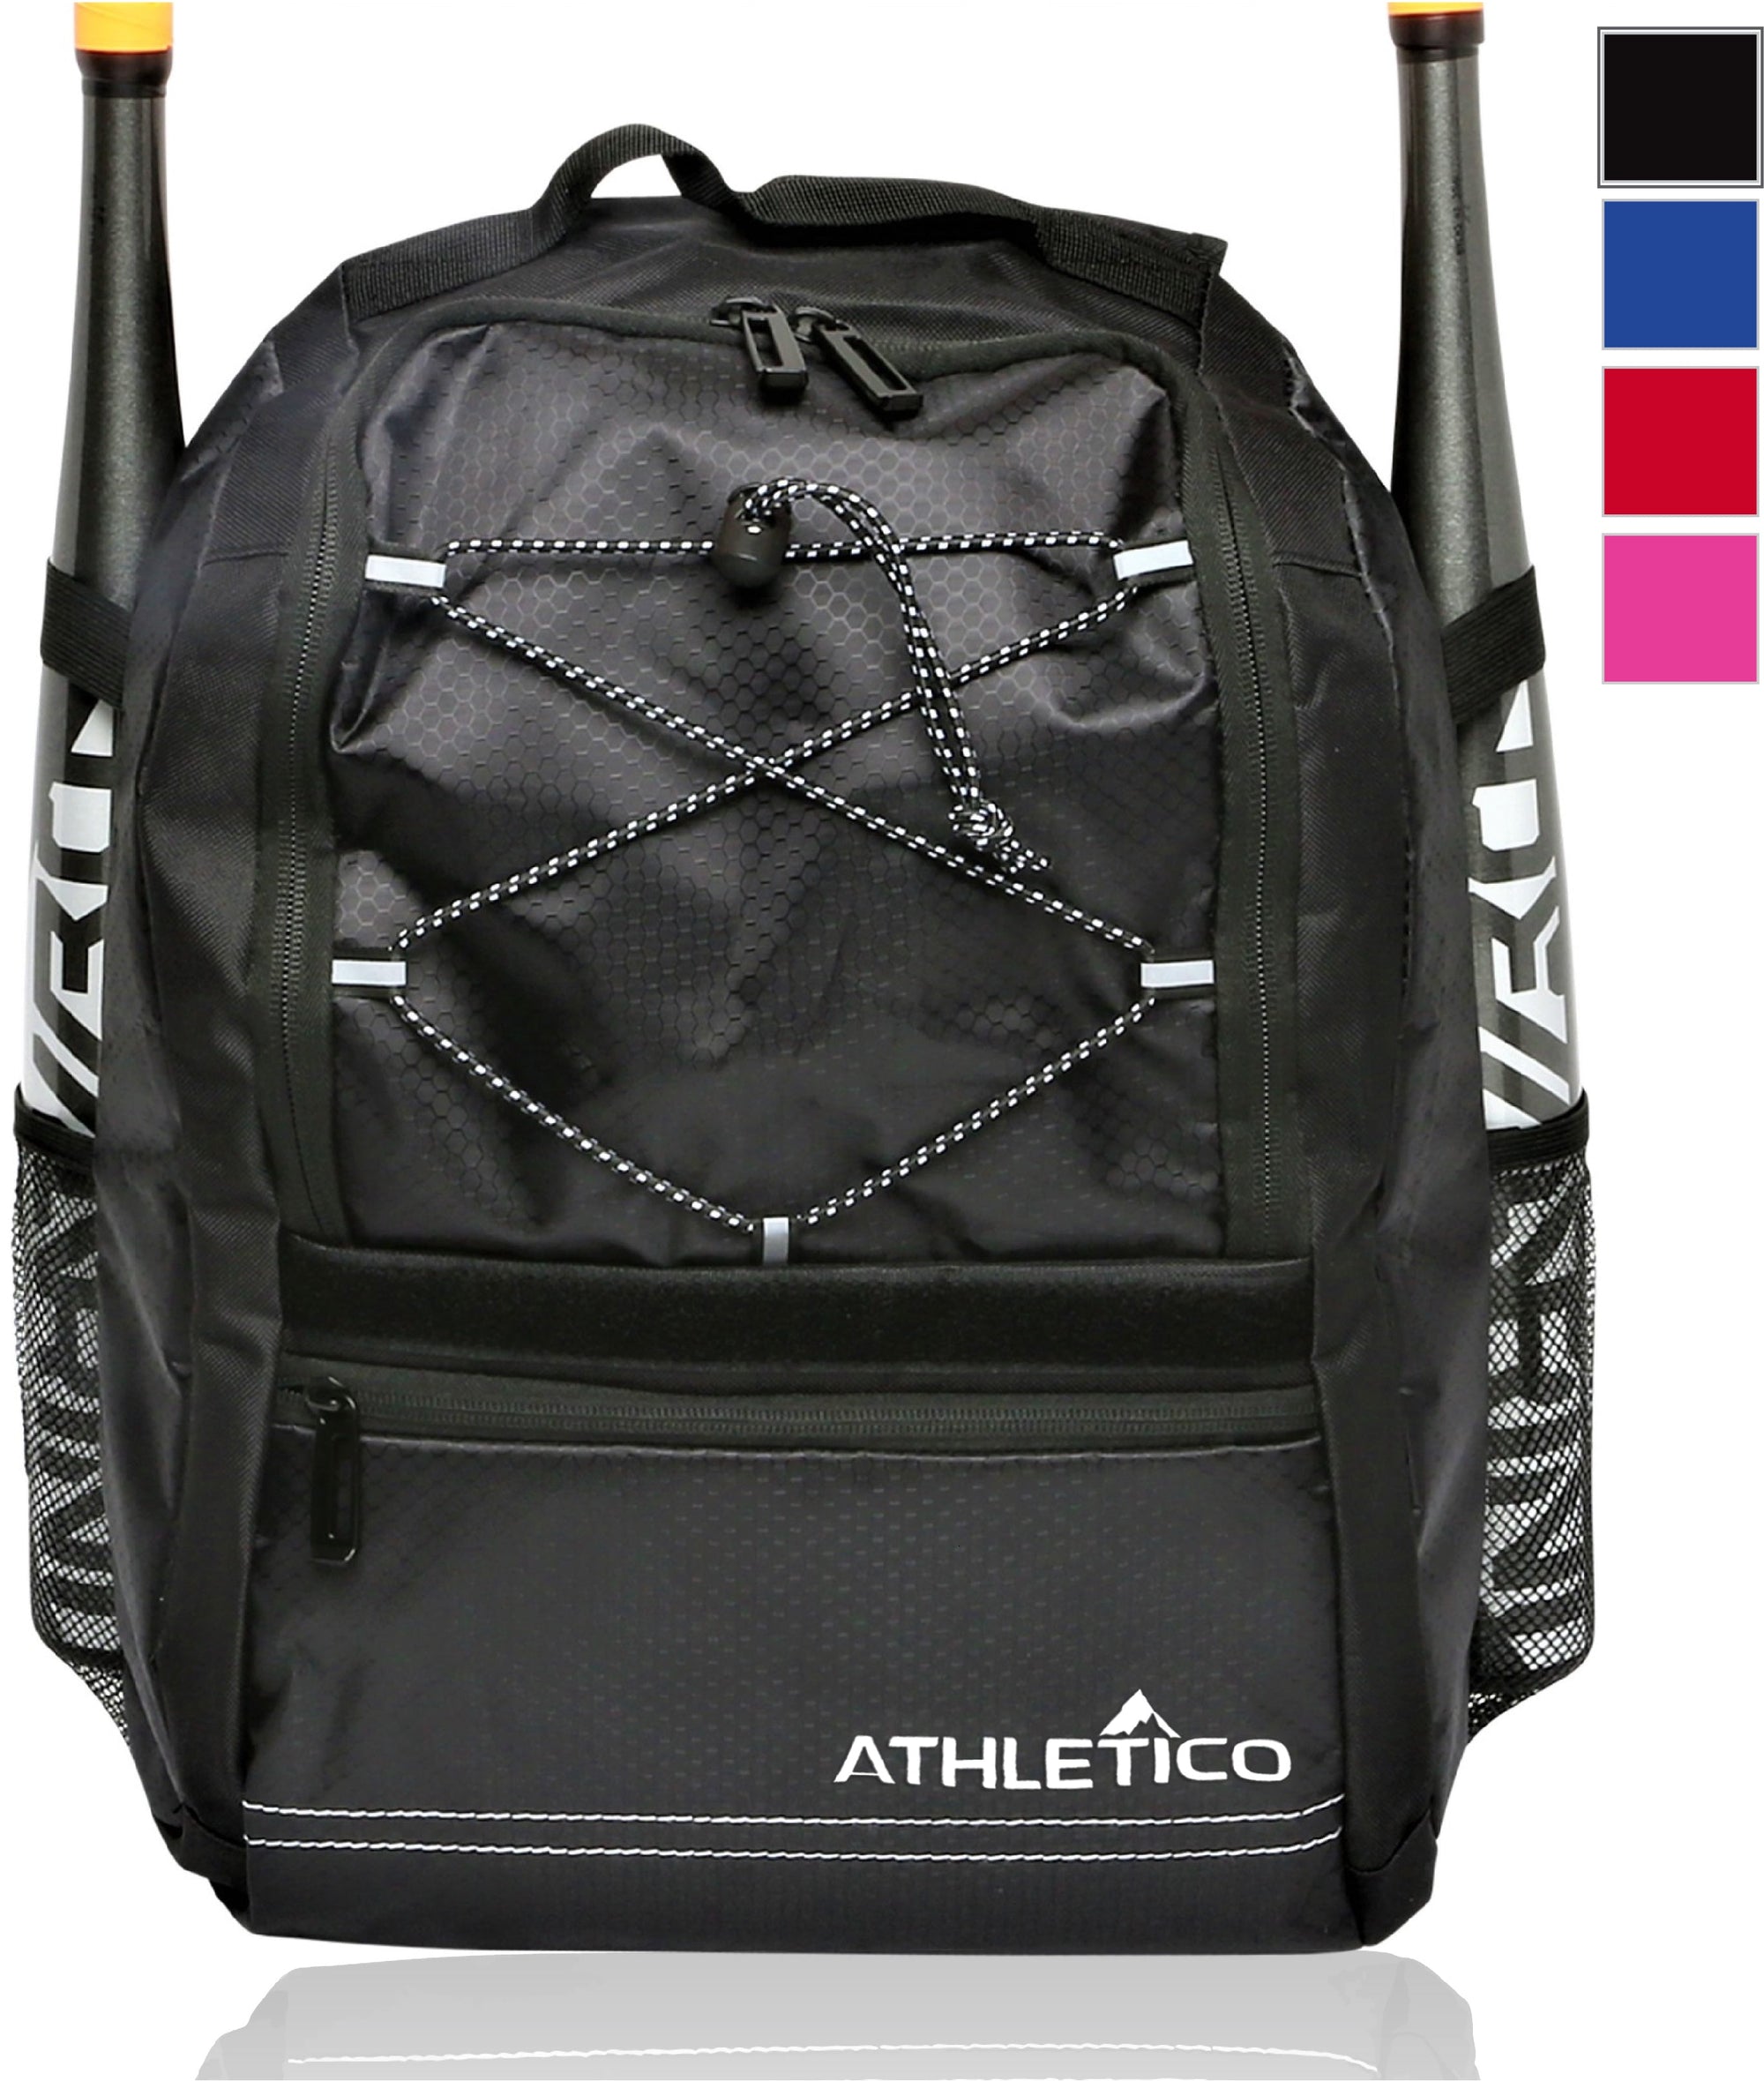 Athletico Youth Baseball Backpack 